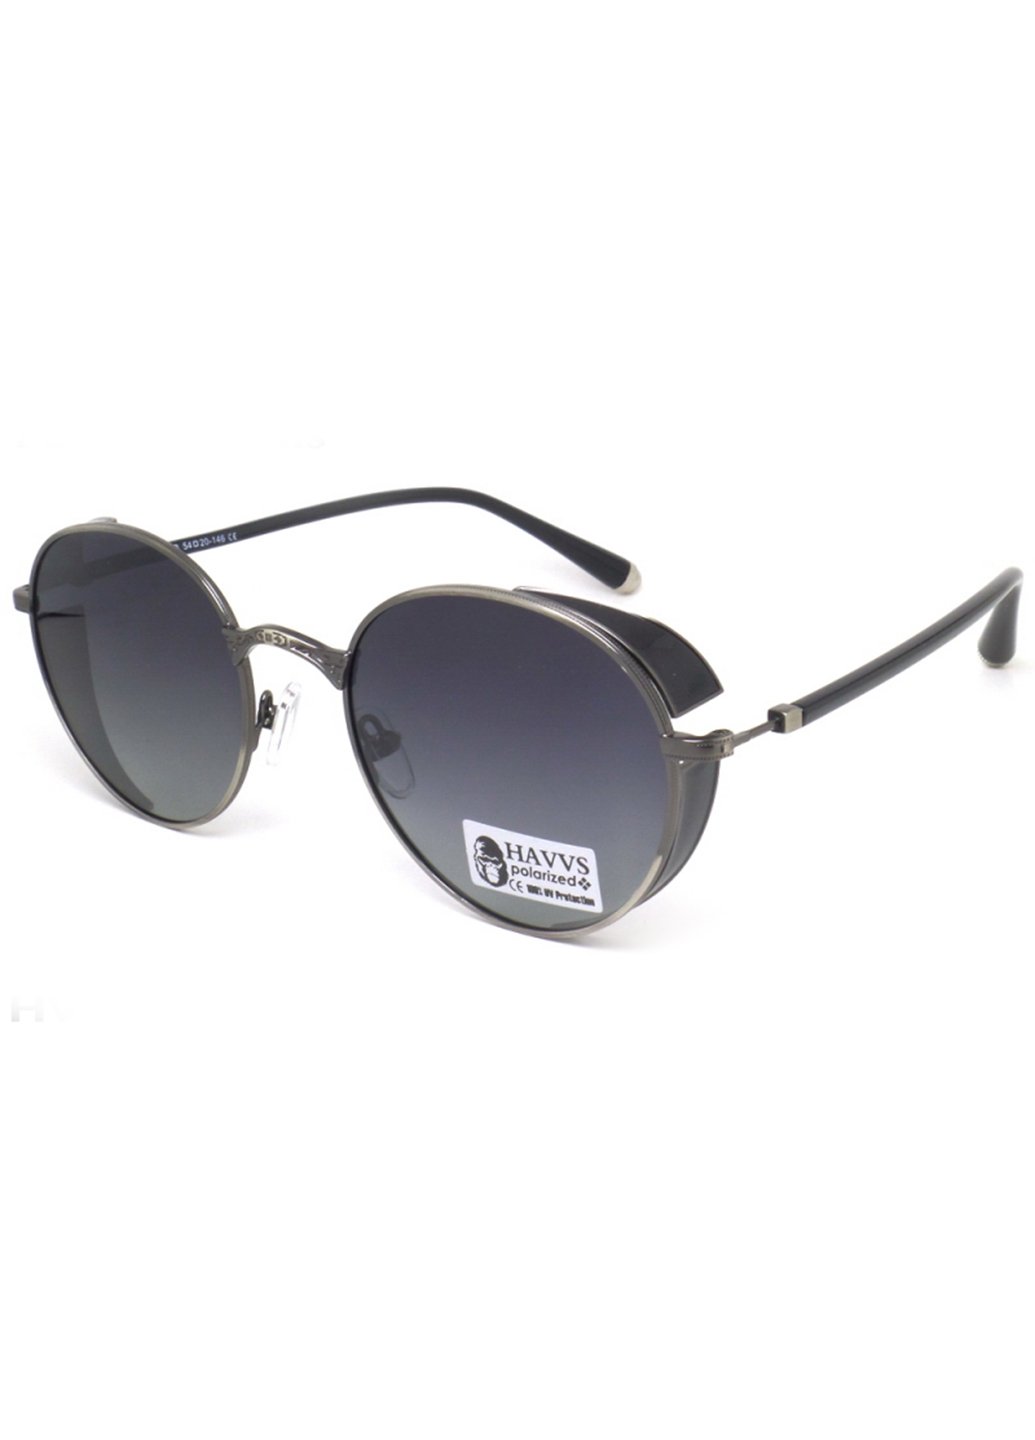 Купить Солнцезащитные очки c поляризацией HAVVS HV68009 170003 - Черный в интернет-магазине